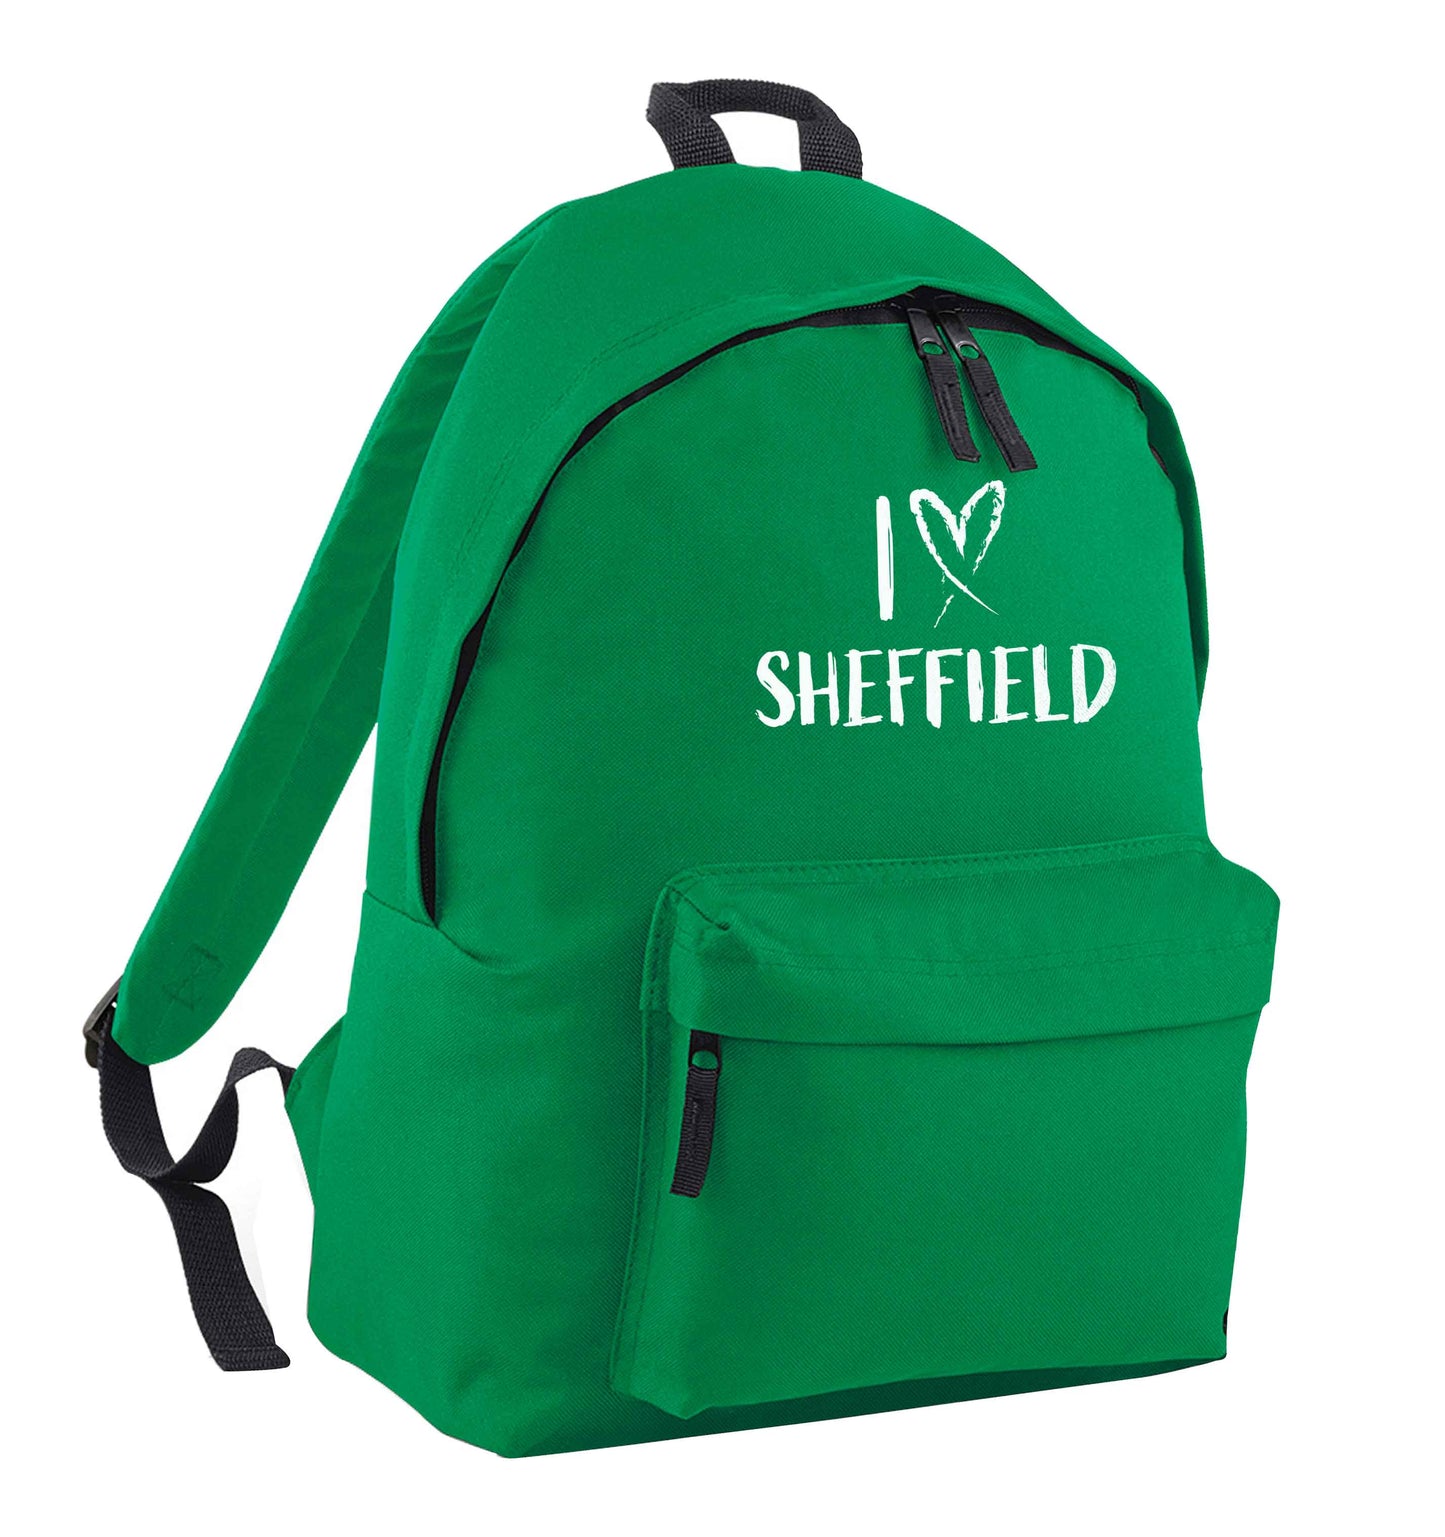 I love Sheffield green adults backpack